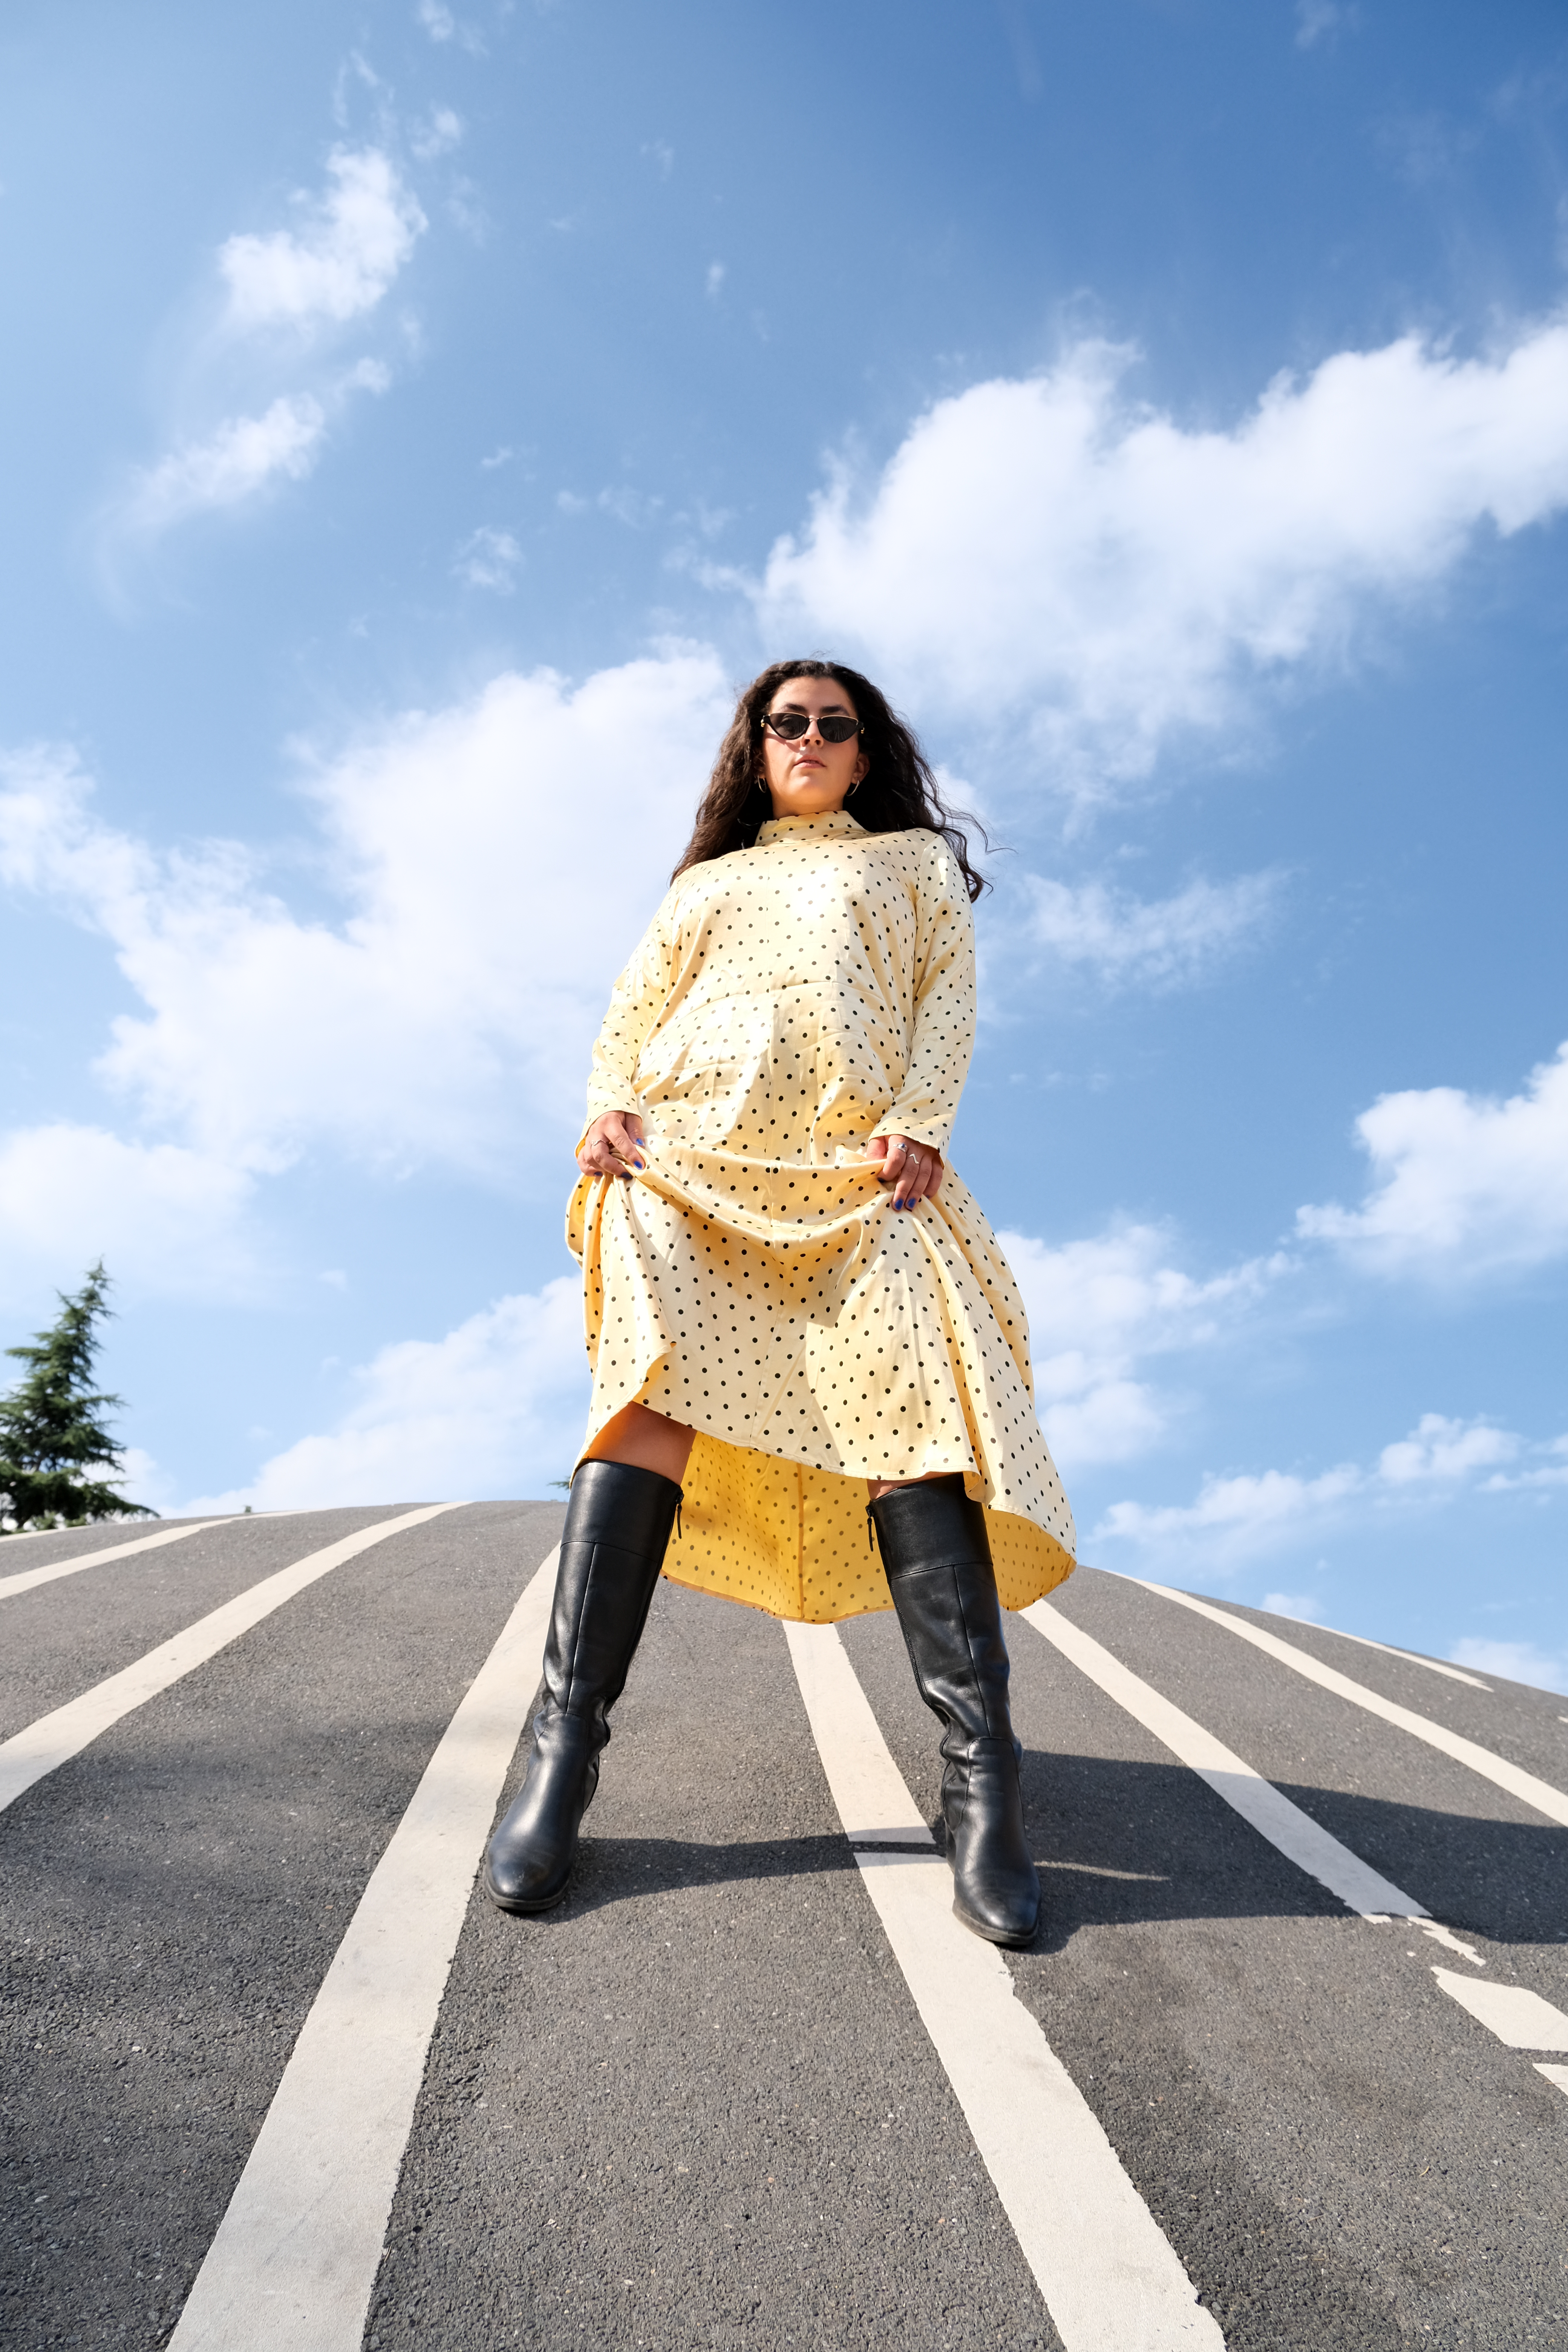 Kampagne billede for Fjong model iført sorte knæstøvler og gul kjole